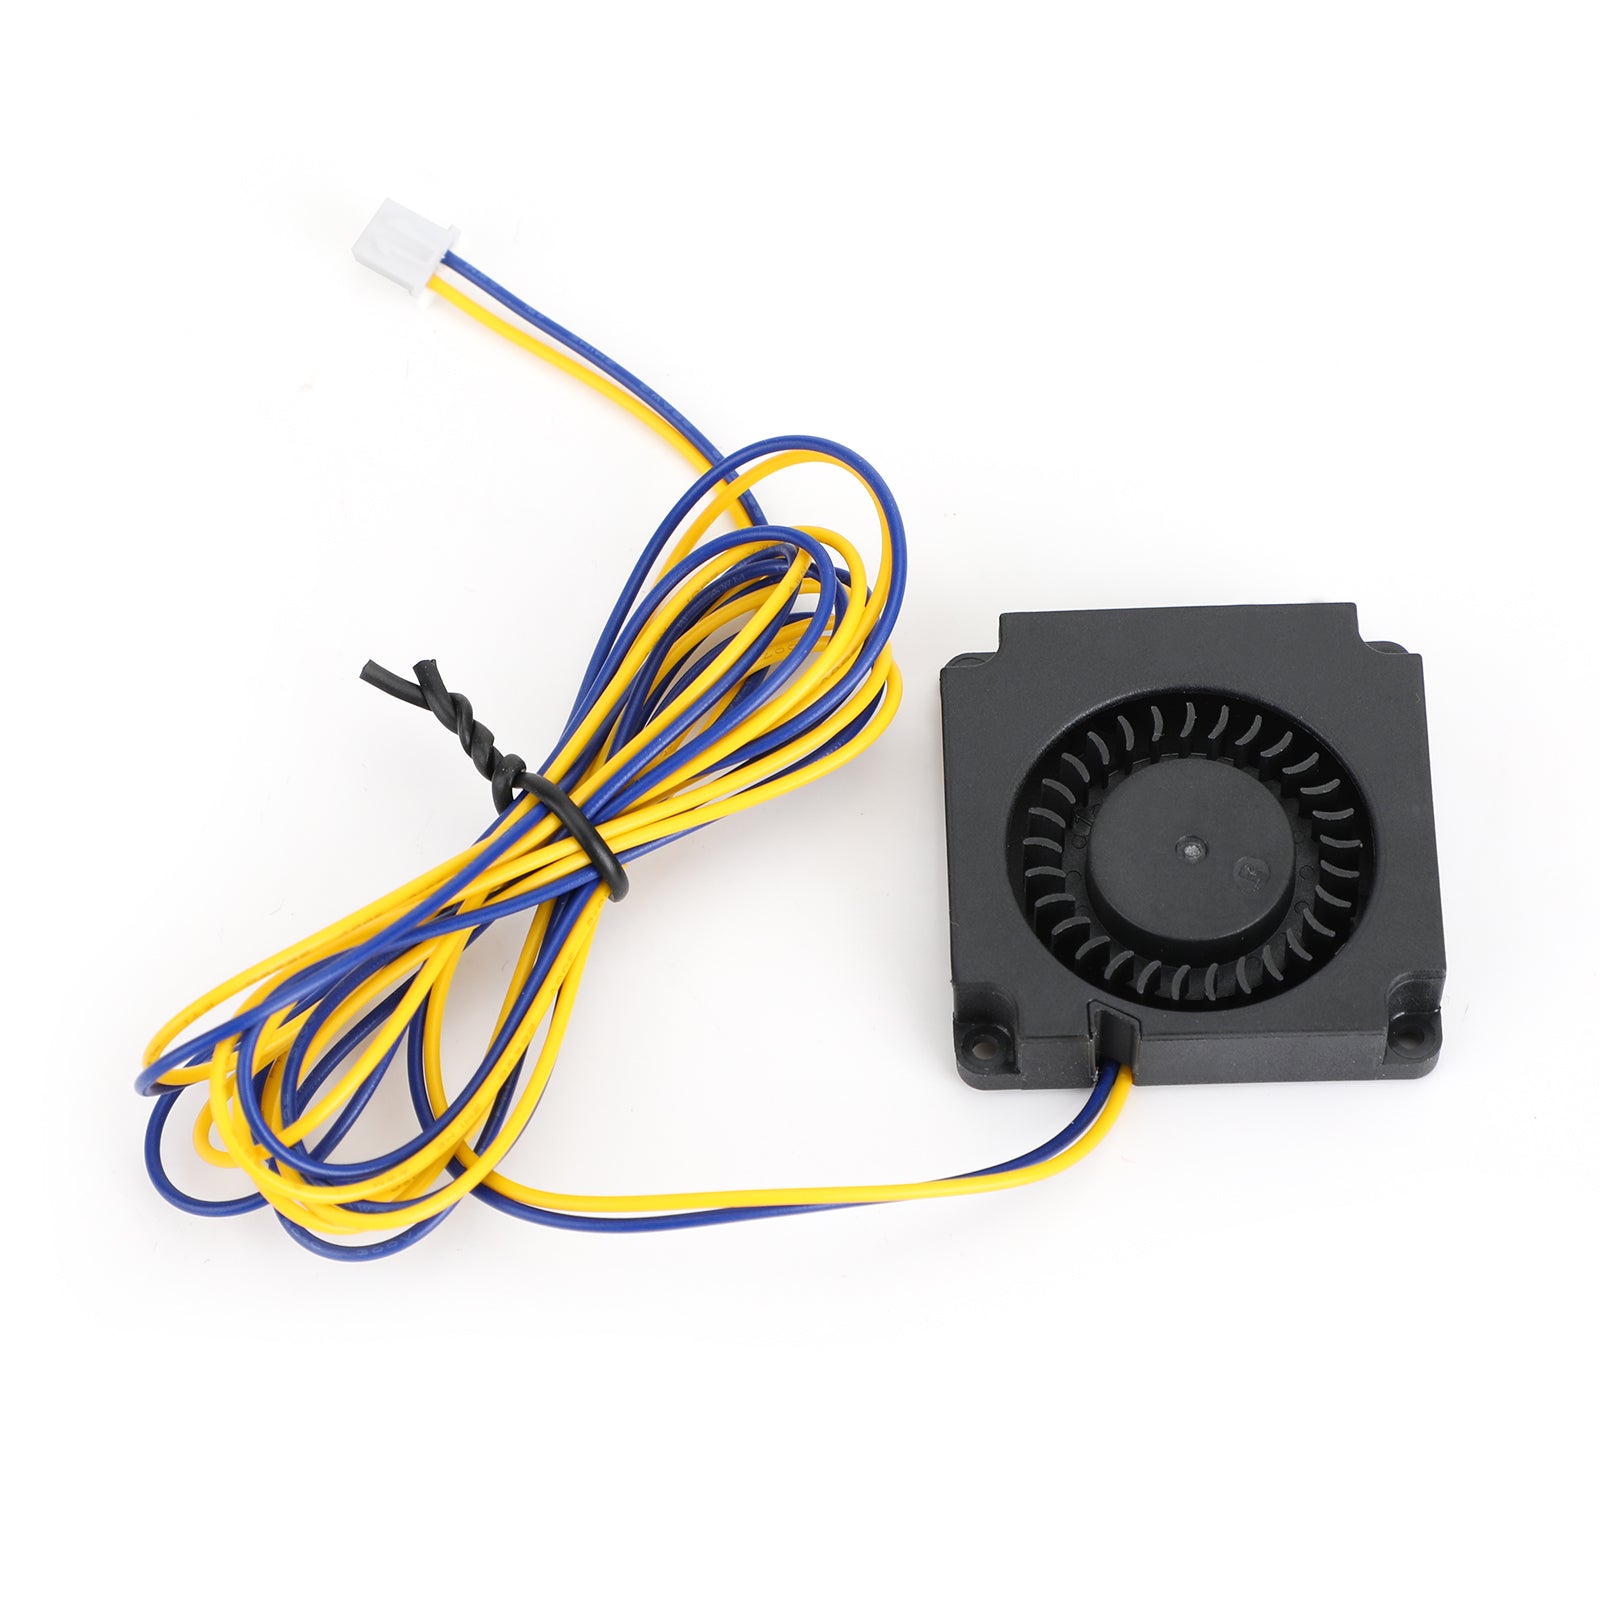 3D Printer Hotend Radial Turbo Blower Fan 24V Accessory For ENDER 3 CR-10S PRO